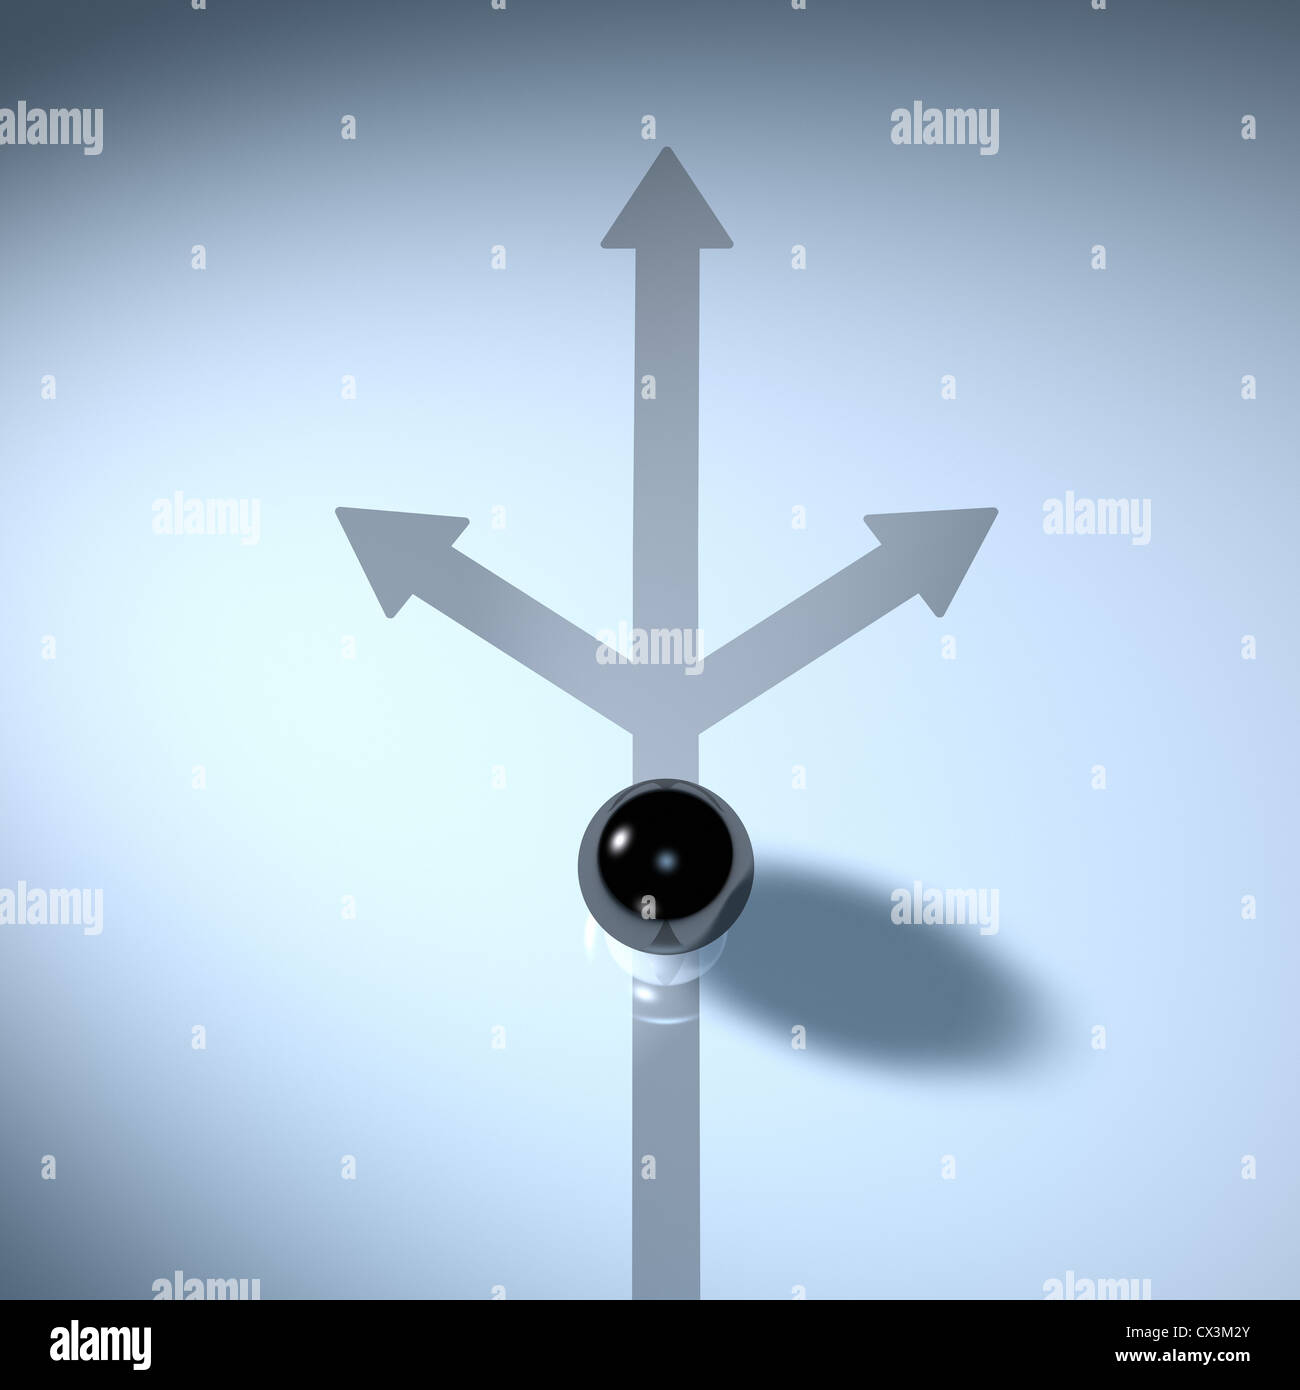 Schwarze Kugel auf einem Weg der sich in 3 Richtungen teilt - Bal sur une piste qui se divise en 3 directions Banque D'Images